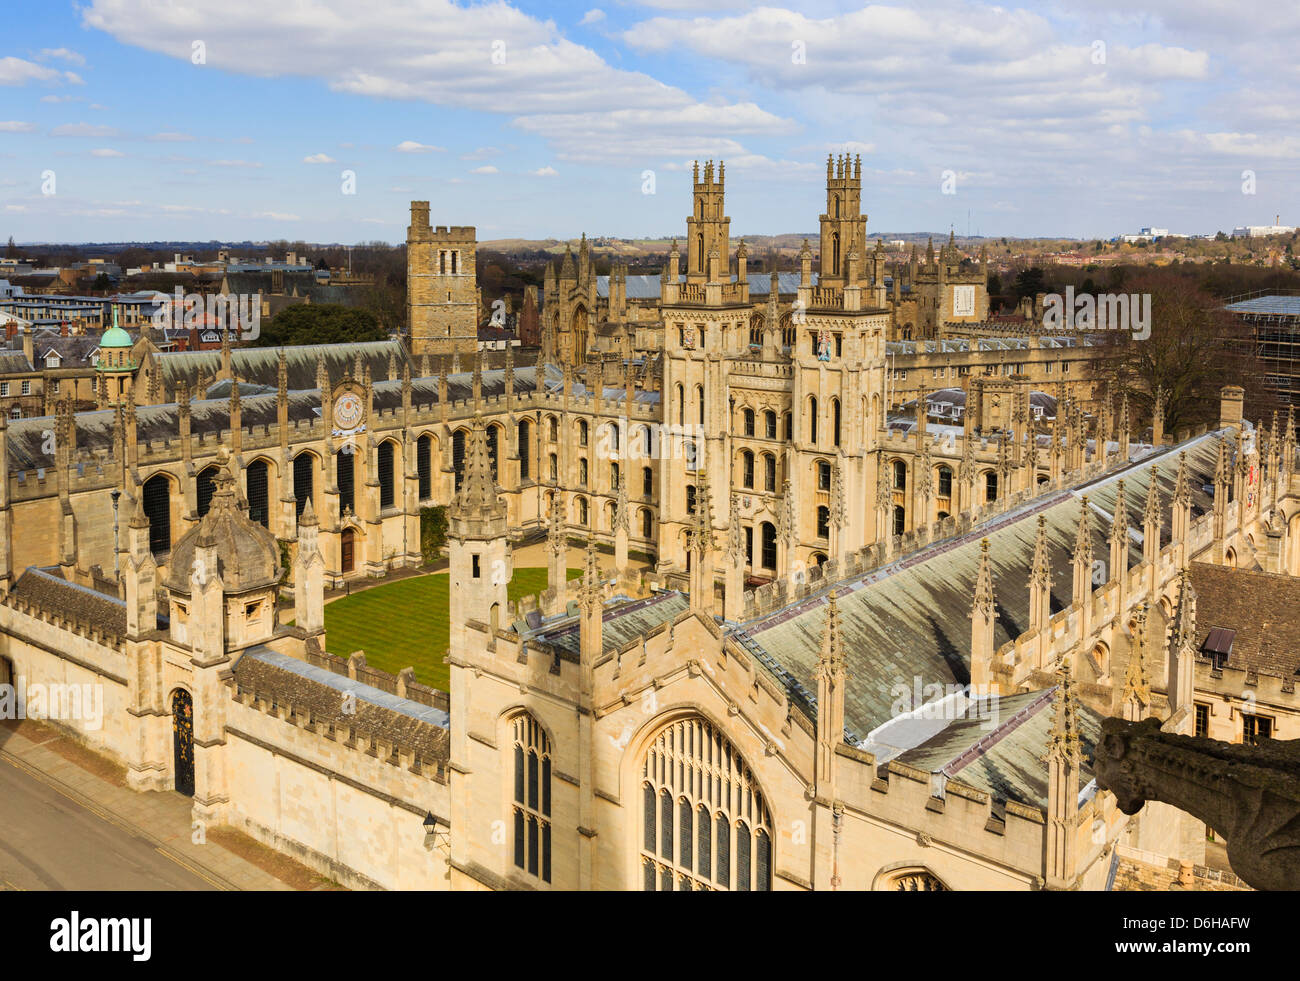 Hohe Blick auf die All Souls College mit Hawksmoor Türmen mit Blick auf das Viereck. Oxford, Oxfordshire, England, Großbritannien, Großbritannien Stockfoto